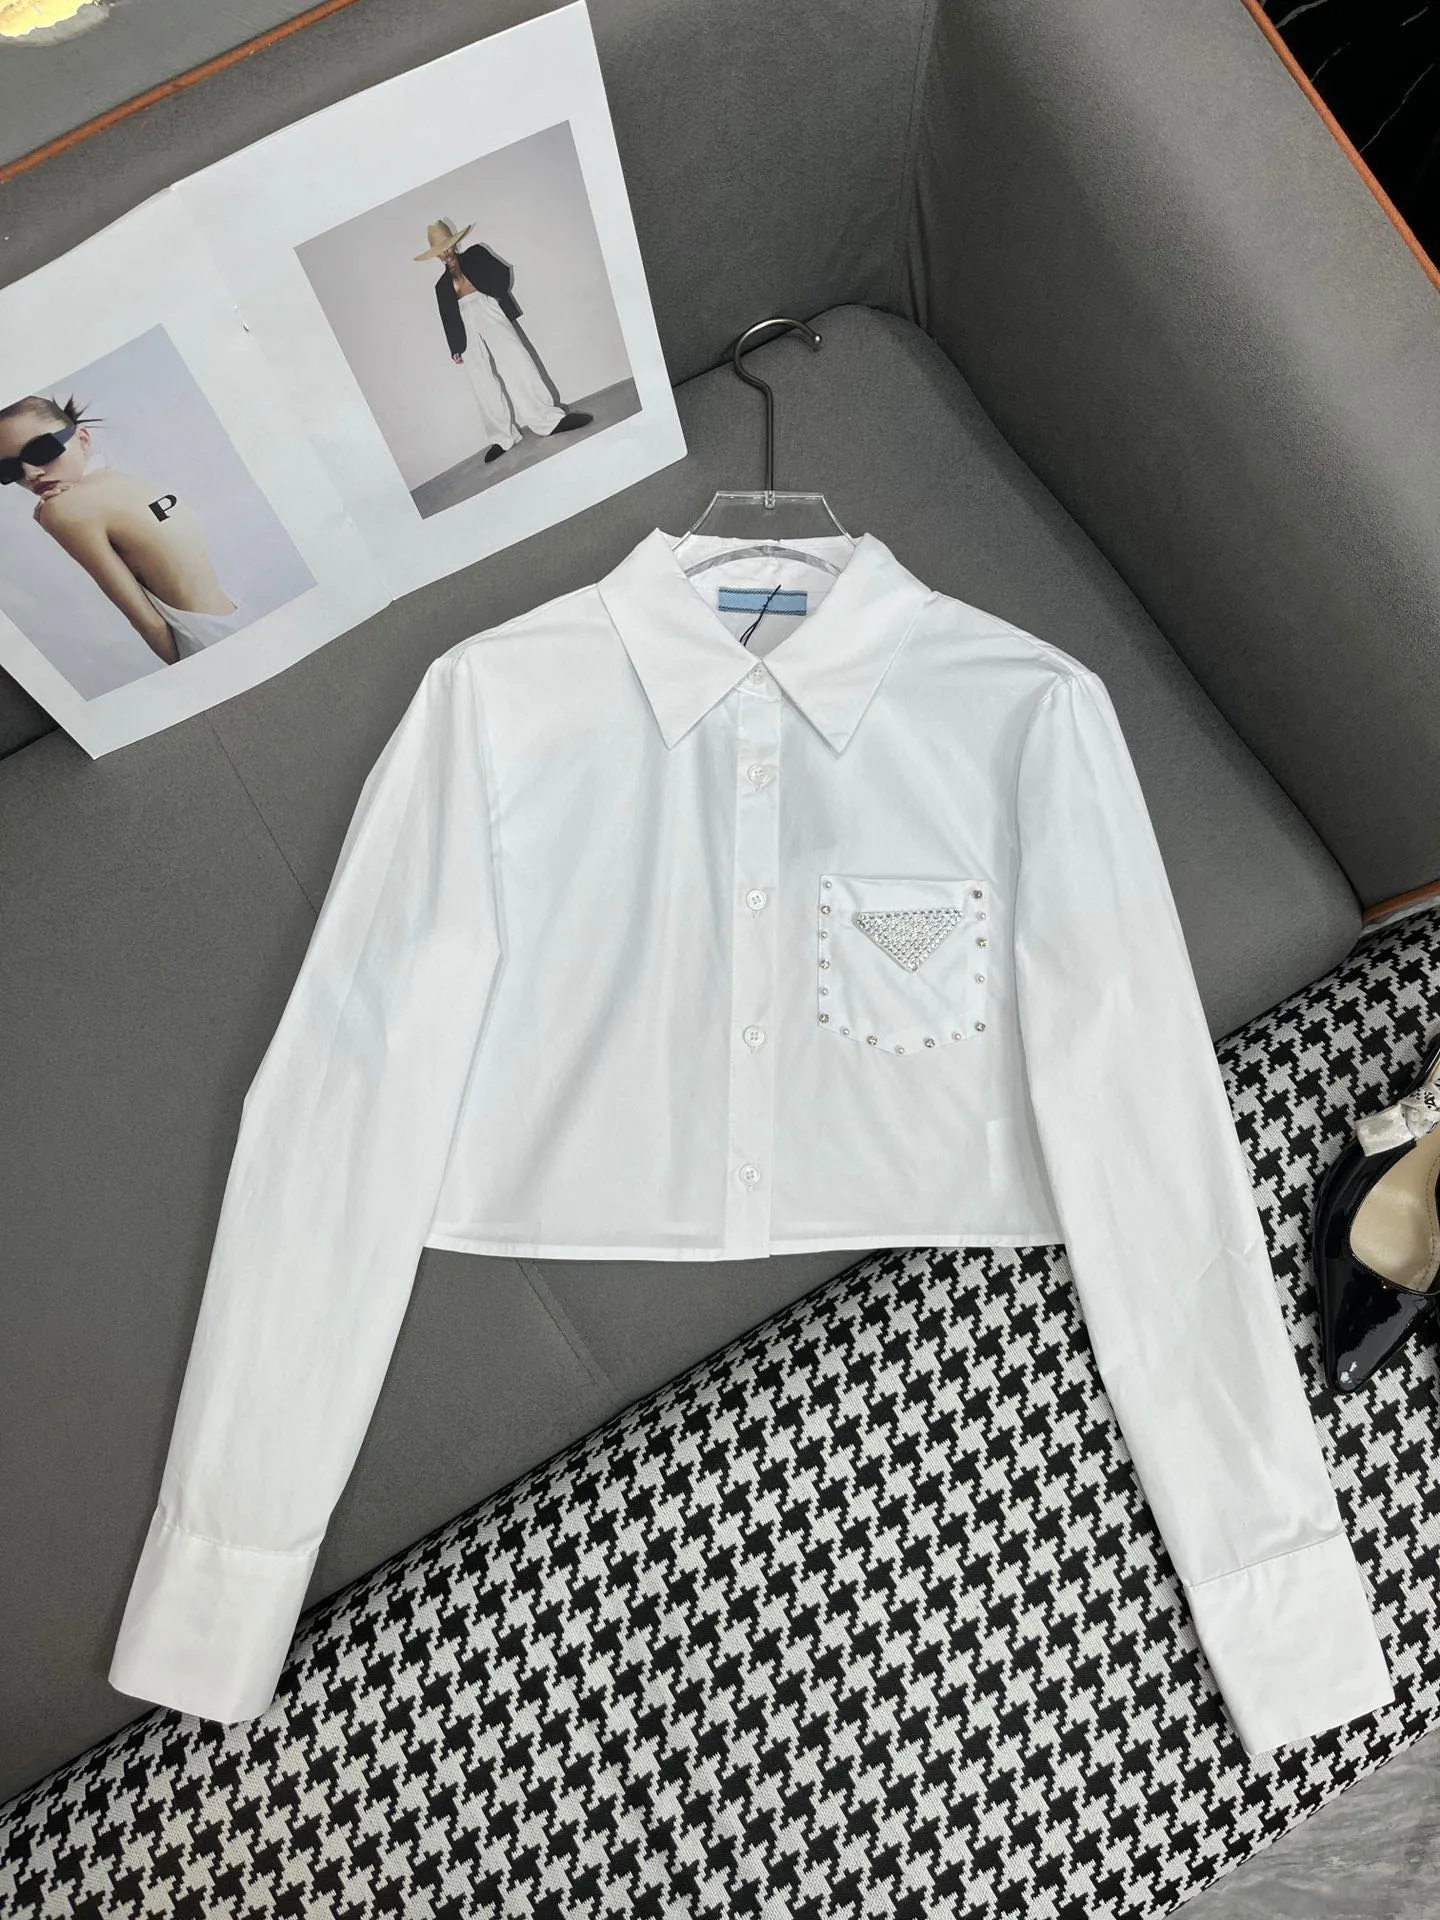 التصميم المتطور ، يُحسس قميصًا أبيض طويل الأكمام مع زخارف زر للترترات للقمصان النسائية